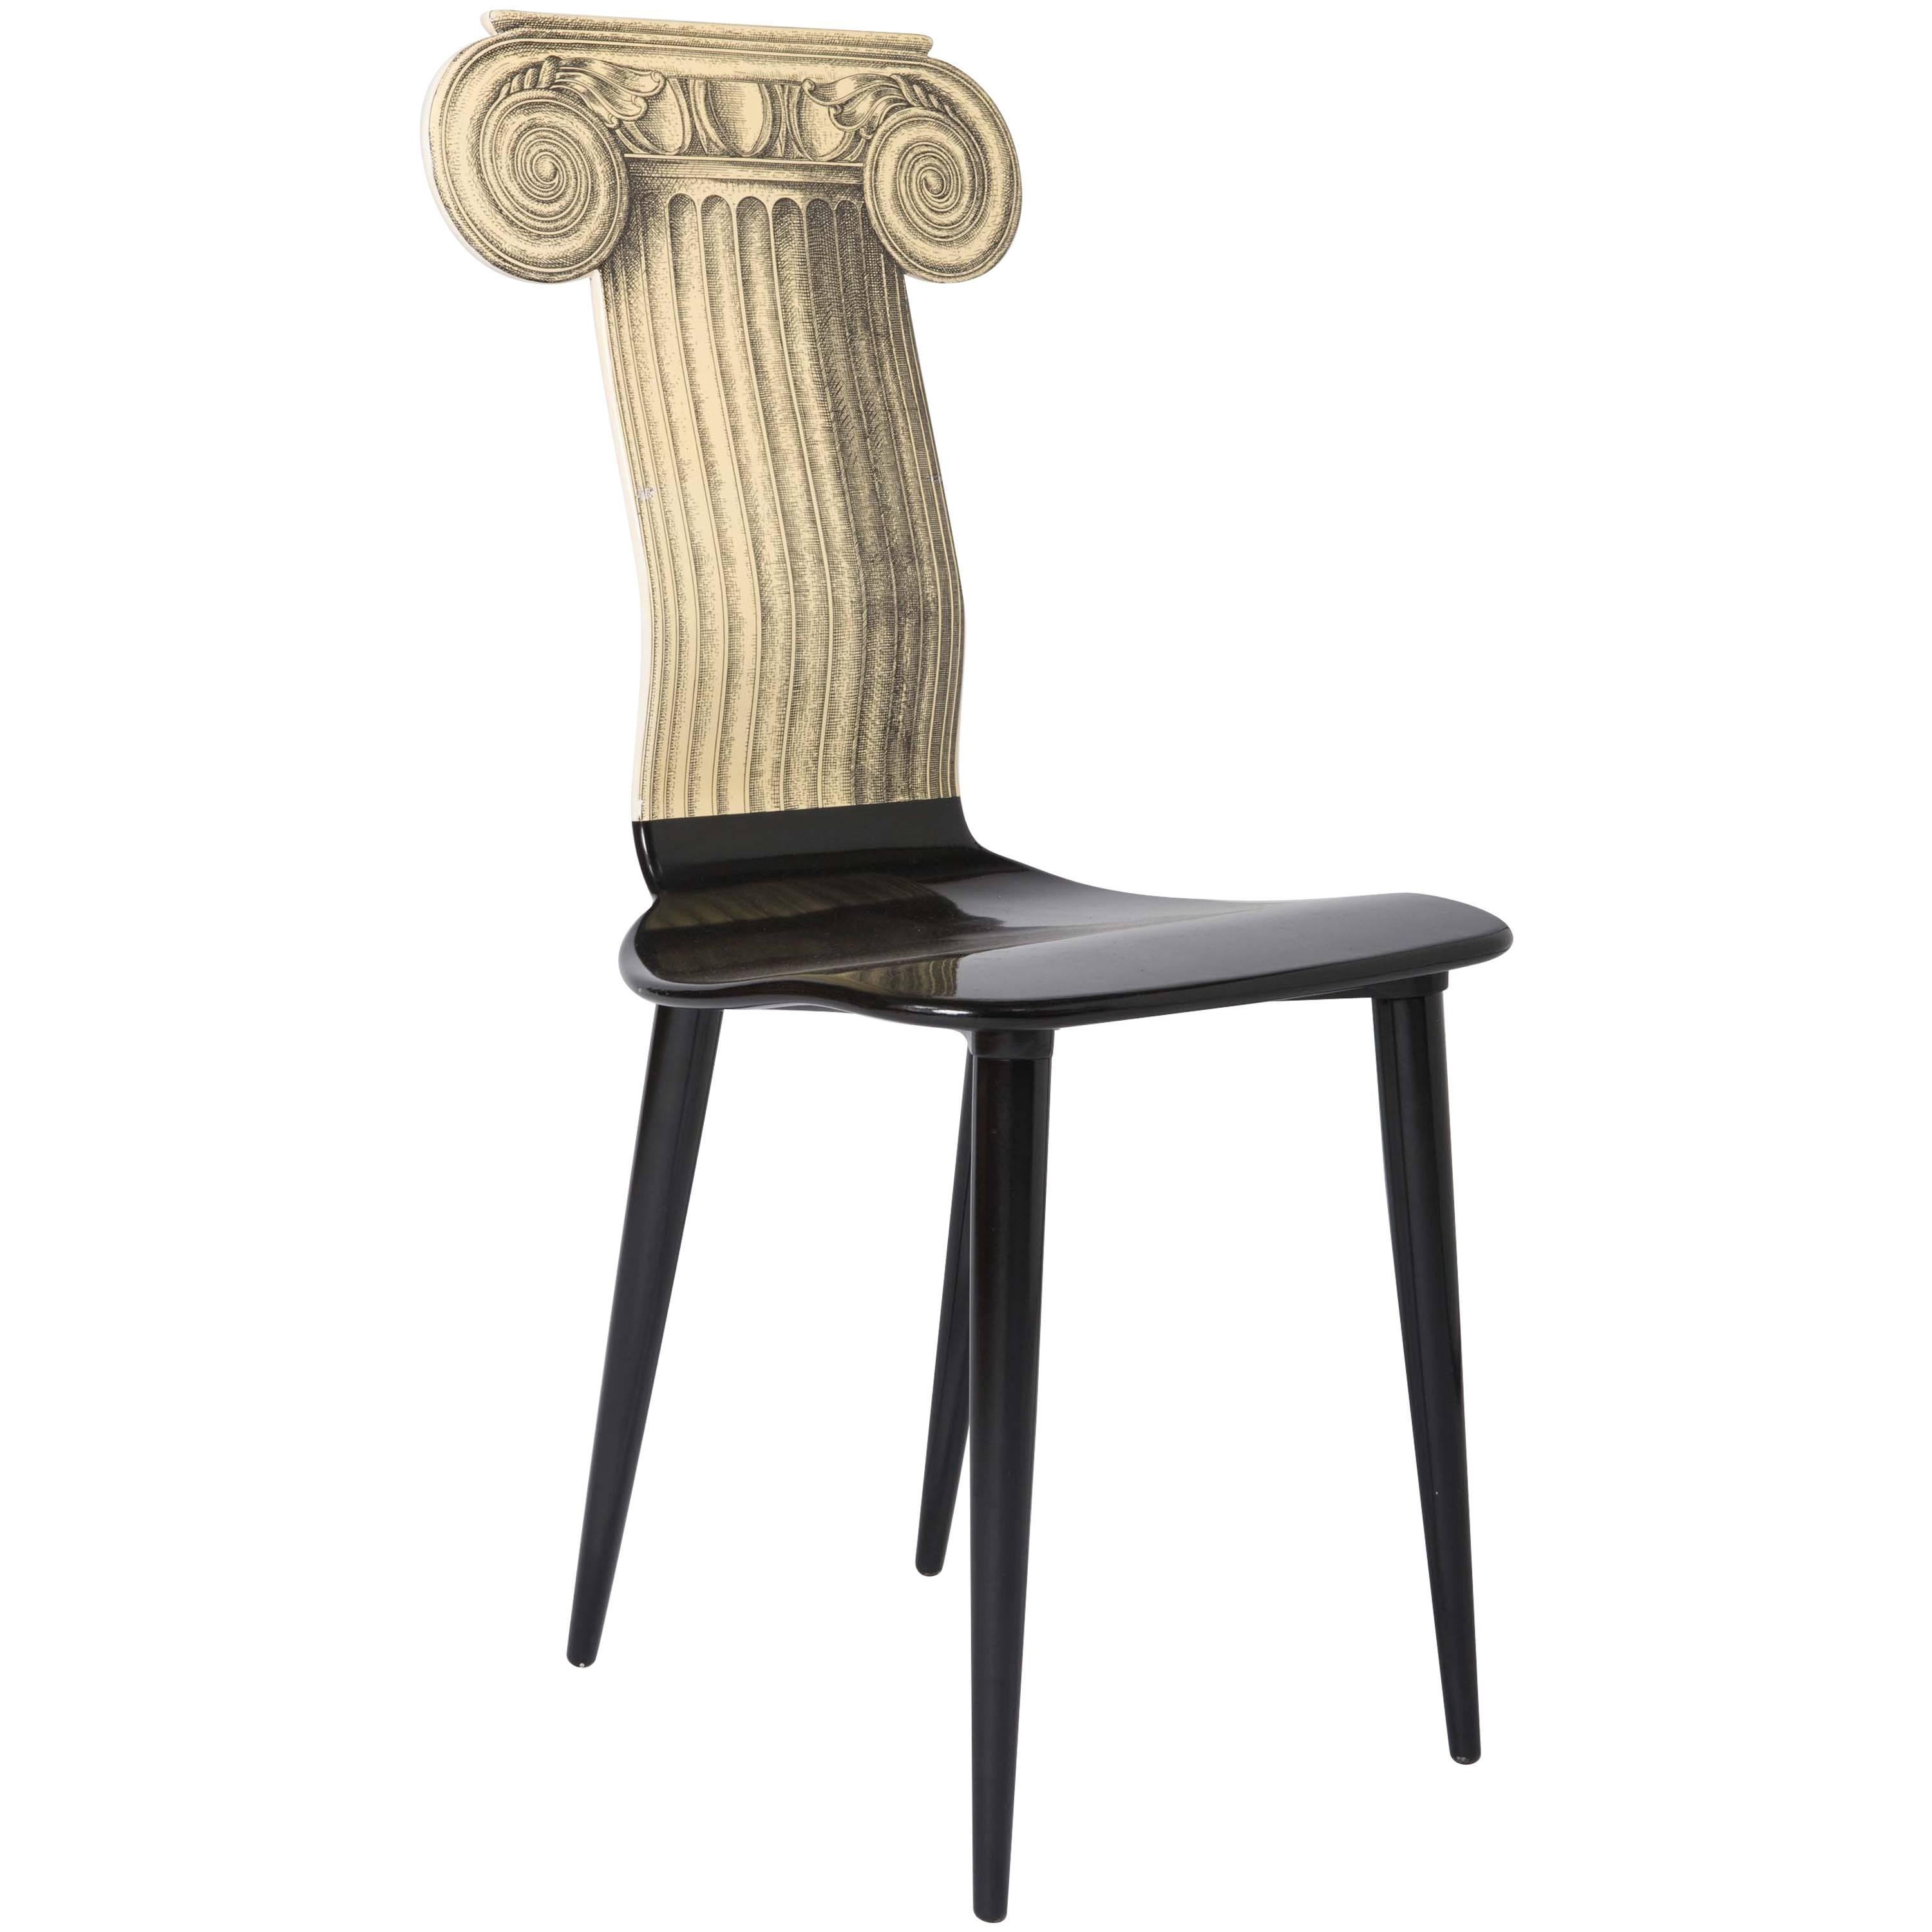 Piero Fornasetti cream colored chair “Cappiello Ionico”, Italy circa 1960 For Sale